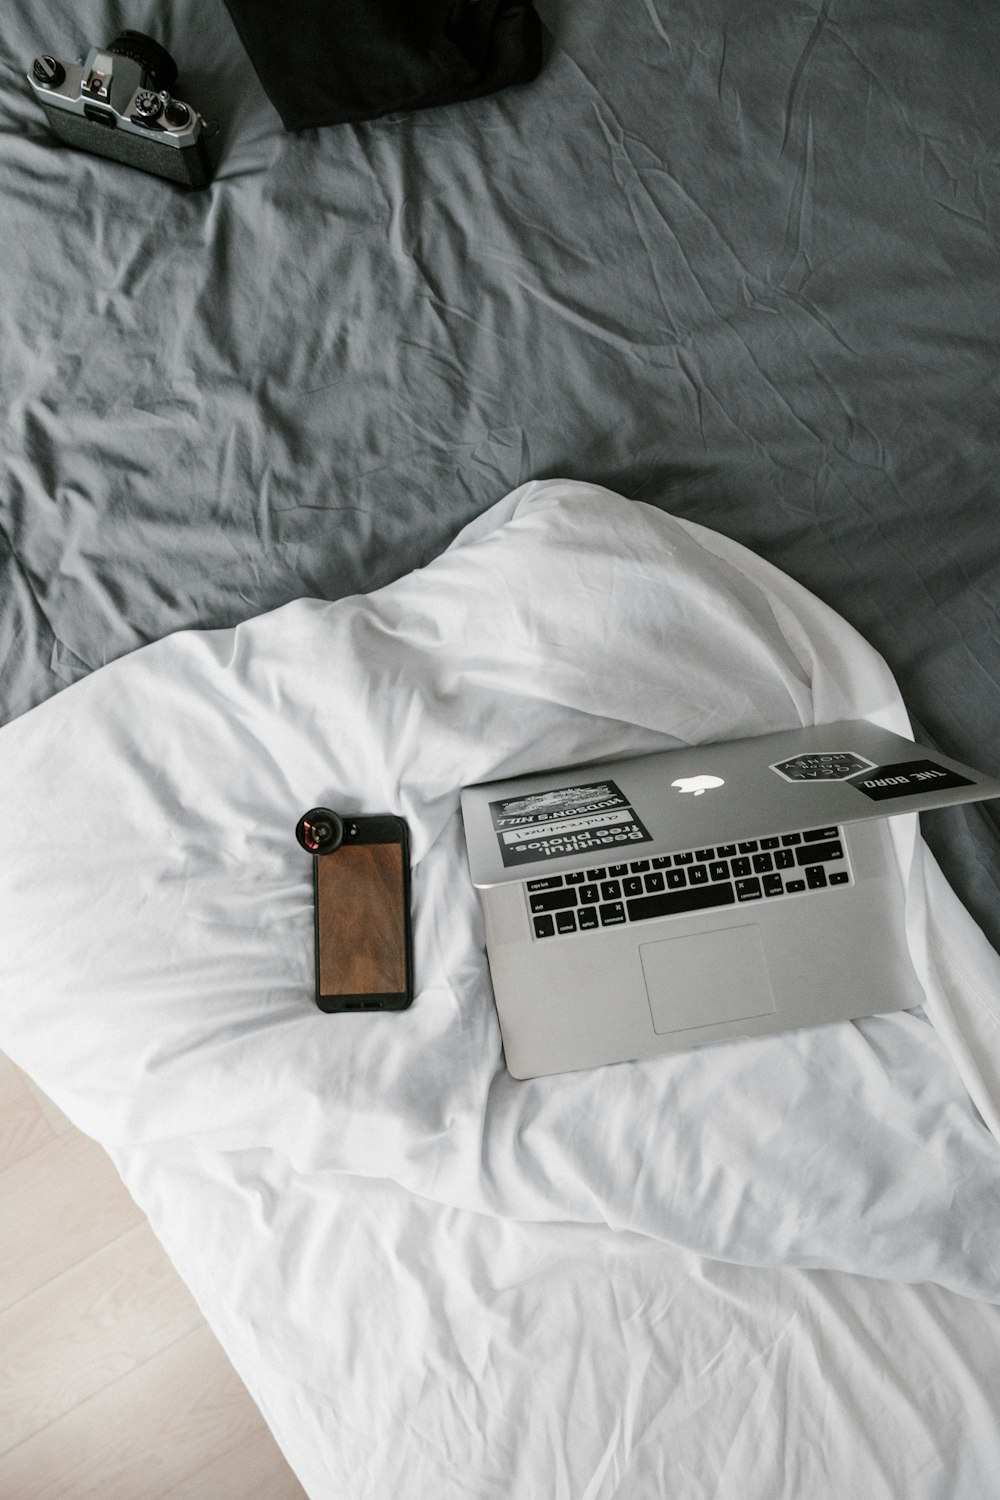 MacBook plateado junto a billetera de cuero marrón sobre textil blanco